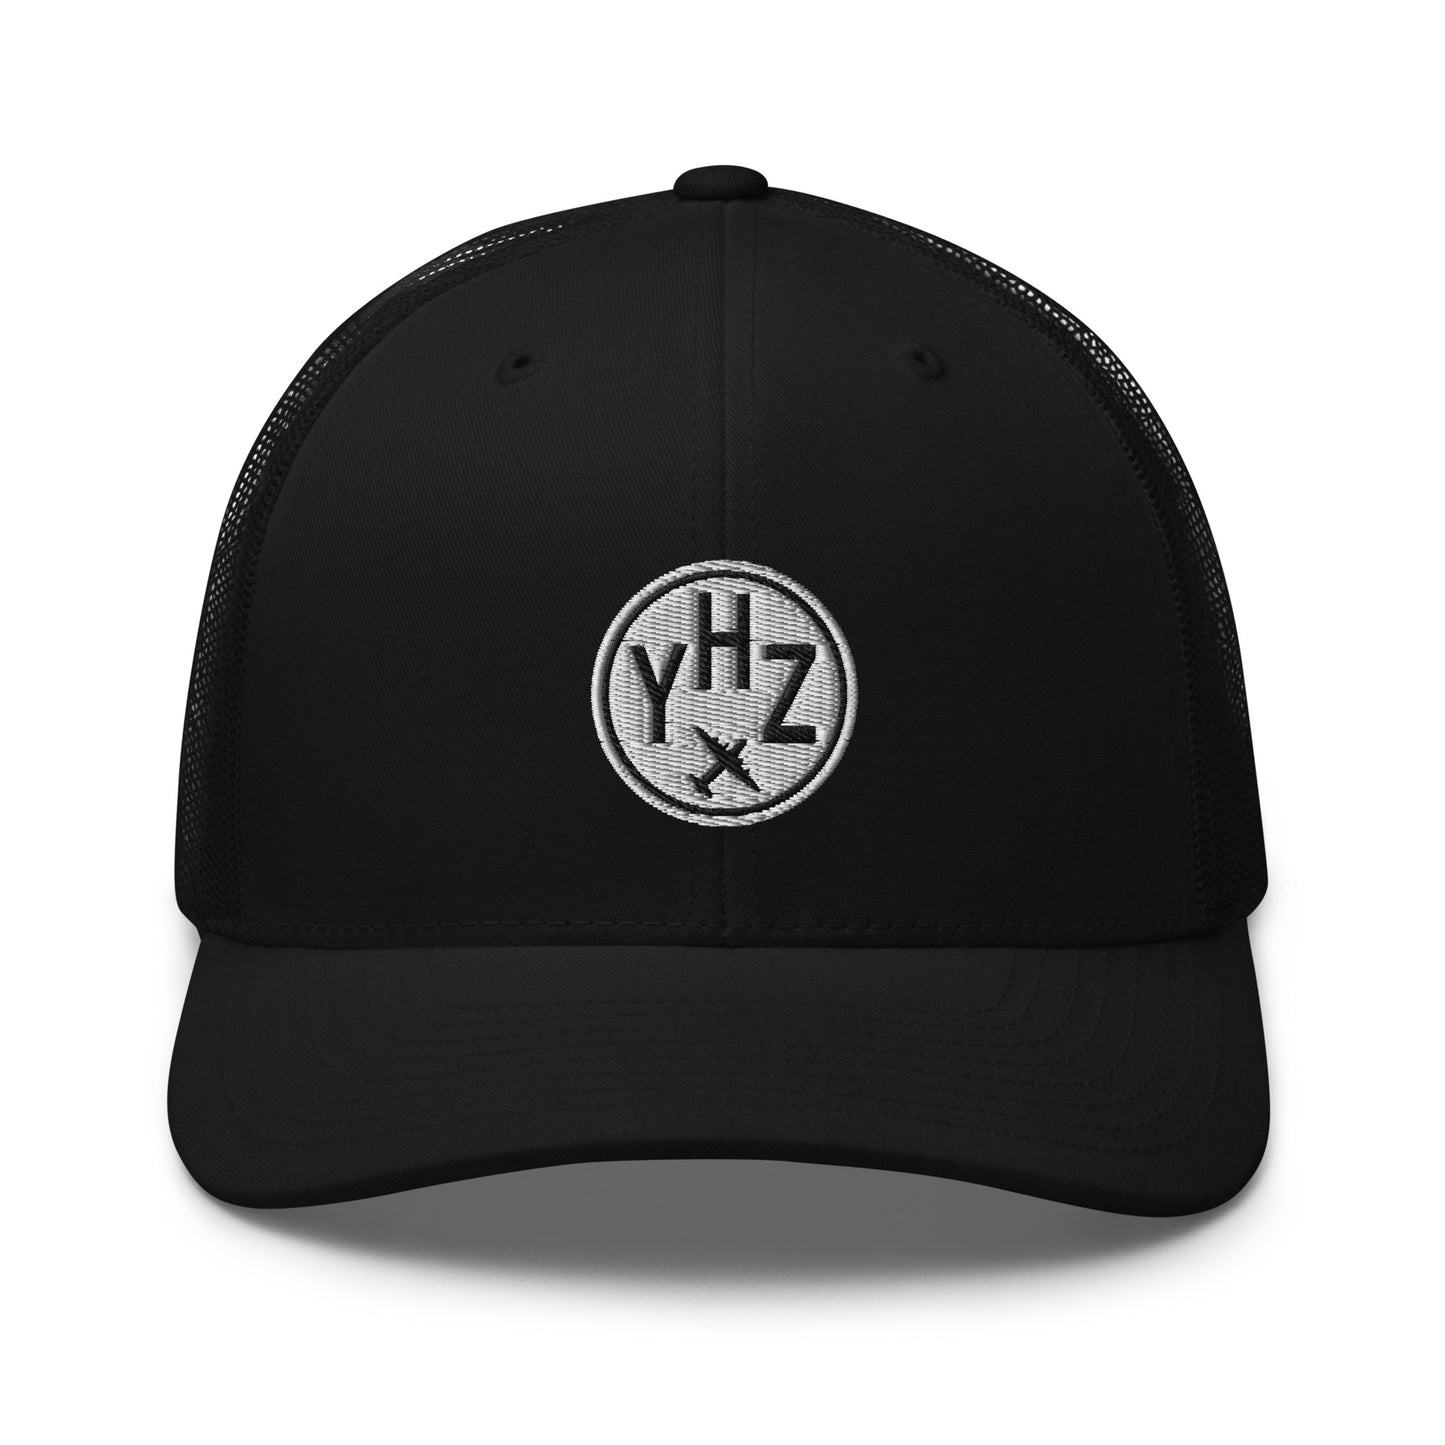 Roundel Trucker Hat - Black & White • YHZ Halifax • YHM Designs - Image 06